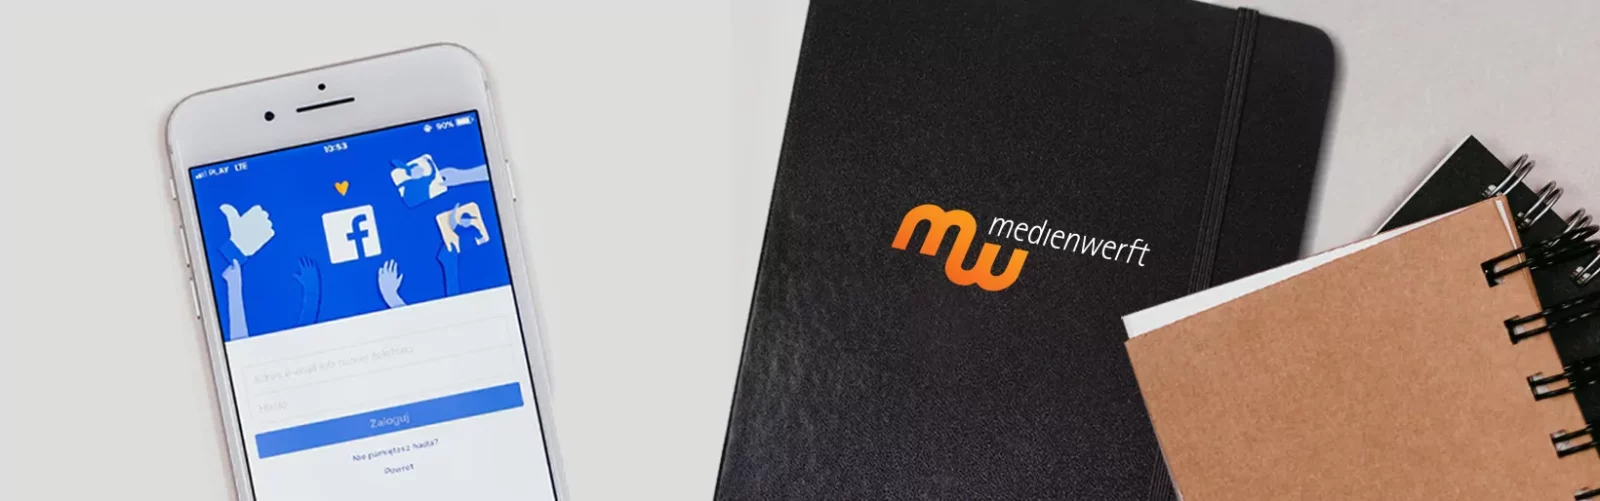 Medienwerft becomes Meta business partner